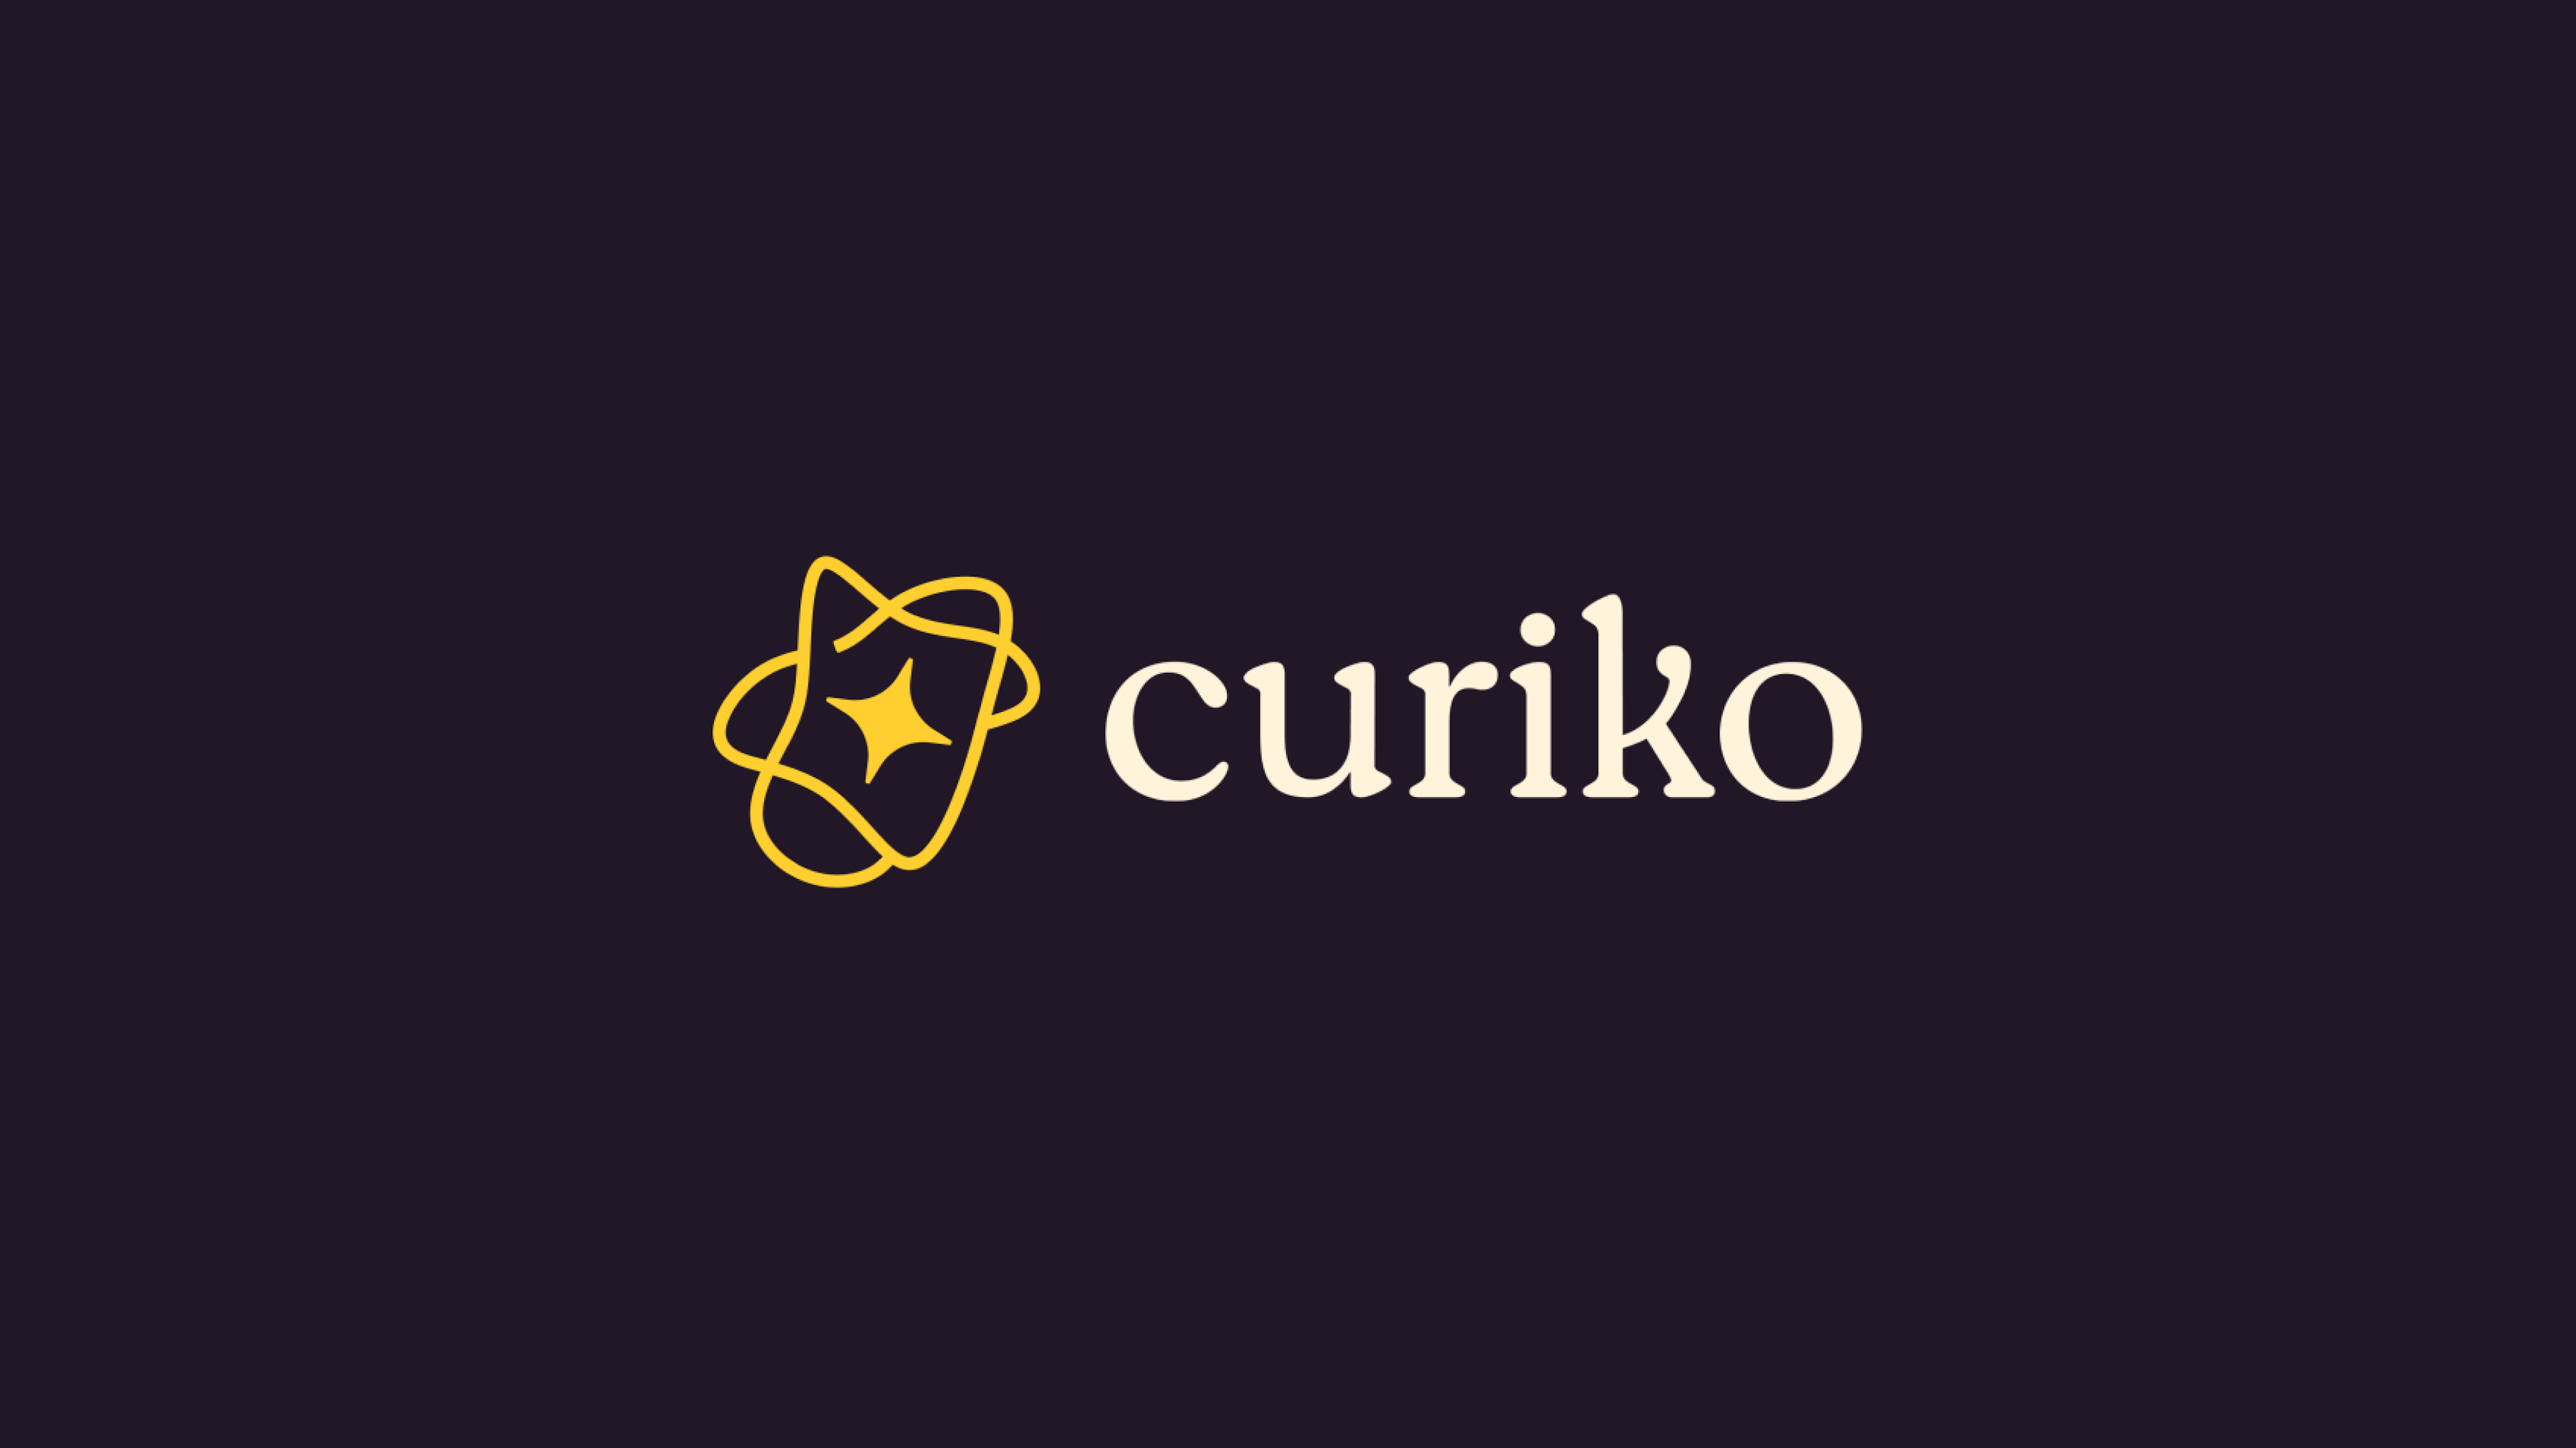 Curiko logo